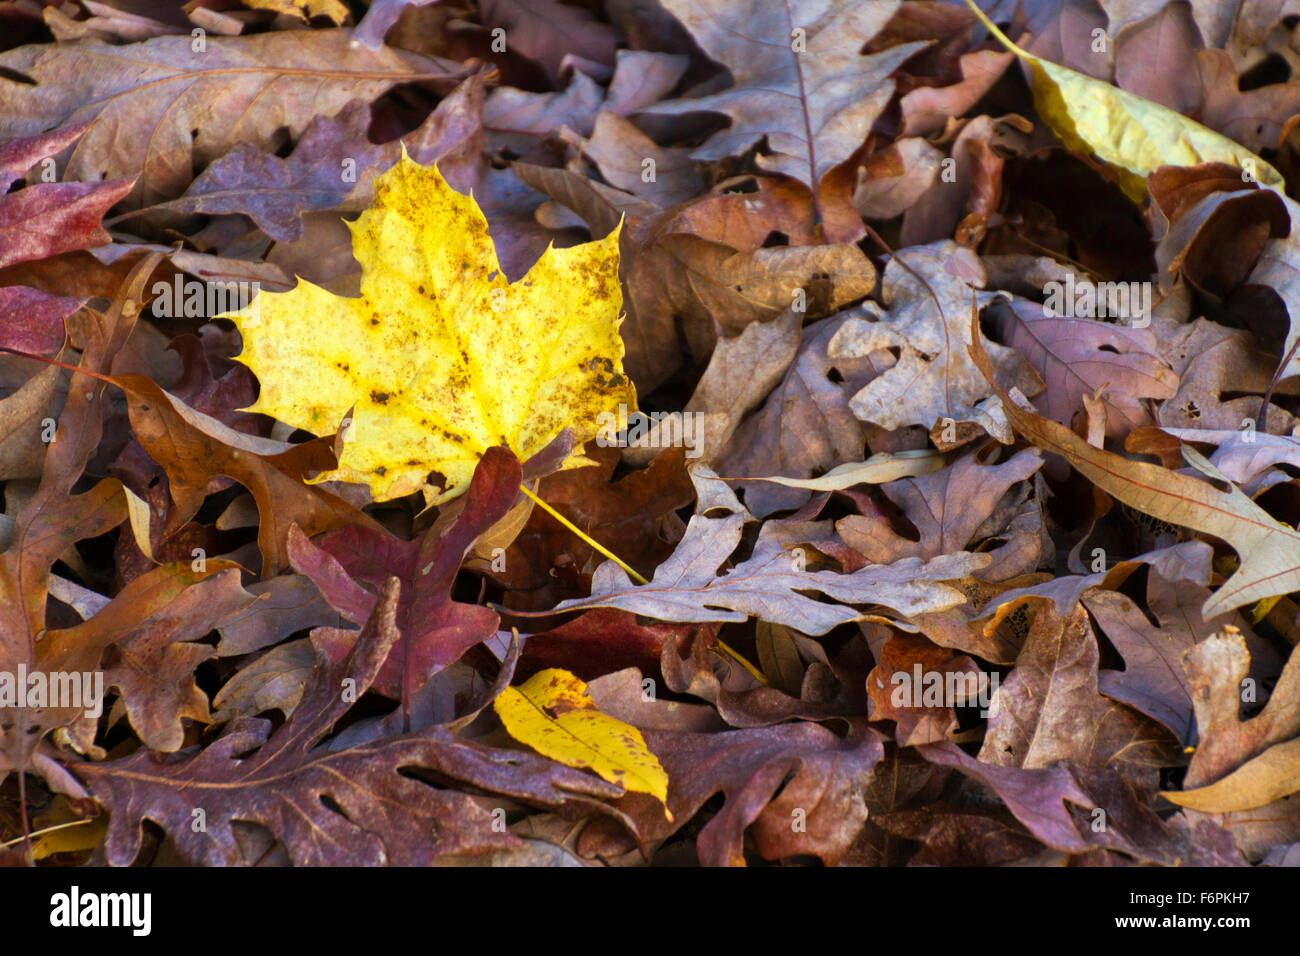 Un coloratissimo mix di secco, rovere marrone le foglie in autunno con uno giallo vivd maple leaf in piedi in mezzo a loro Foto Stock